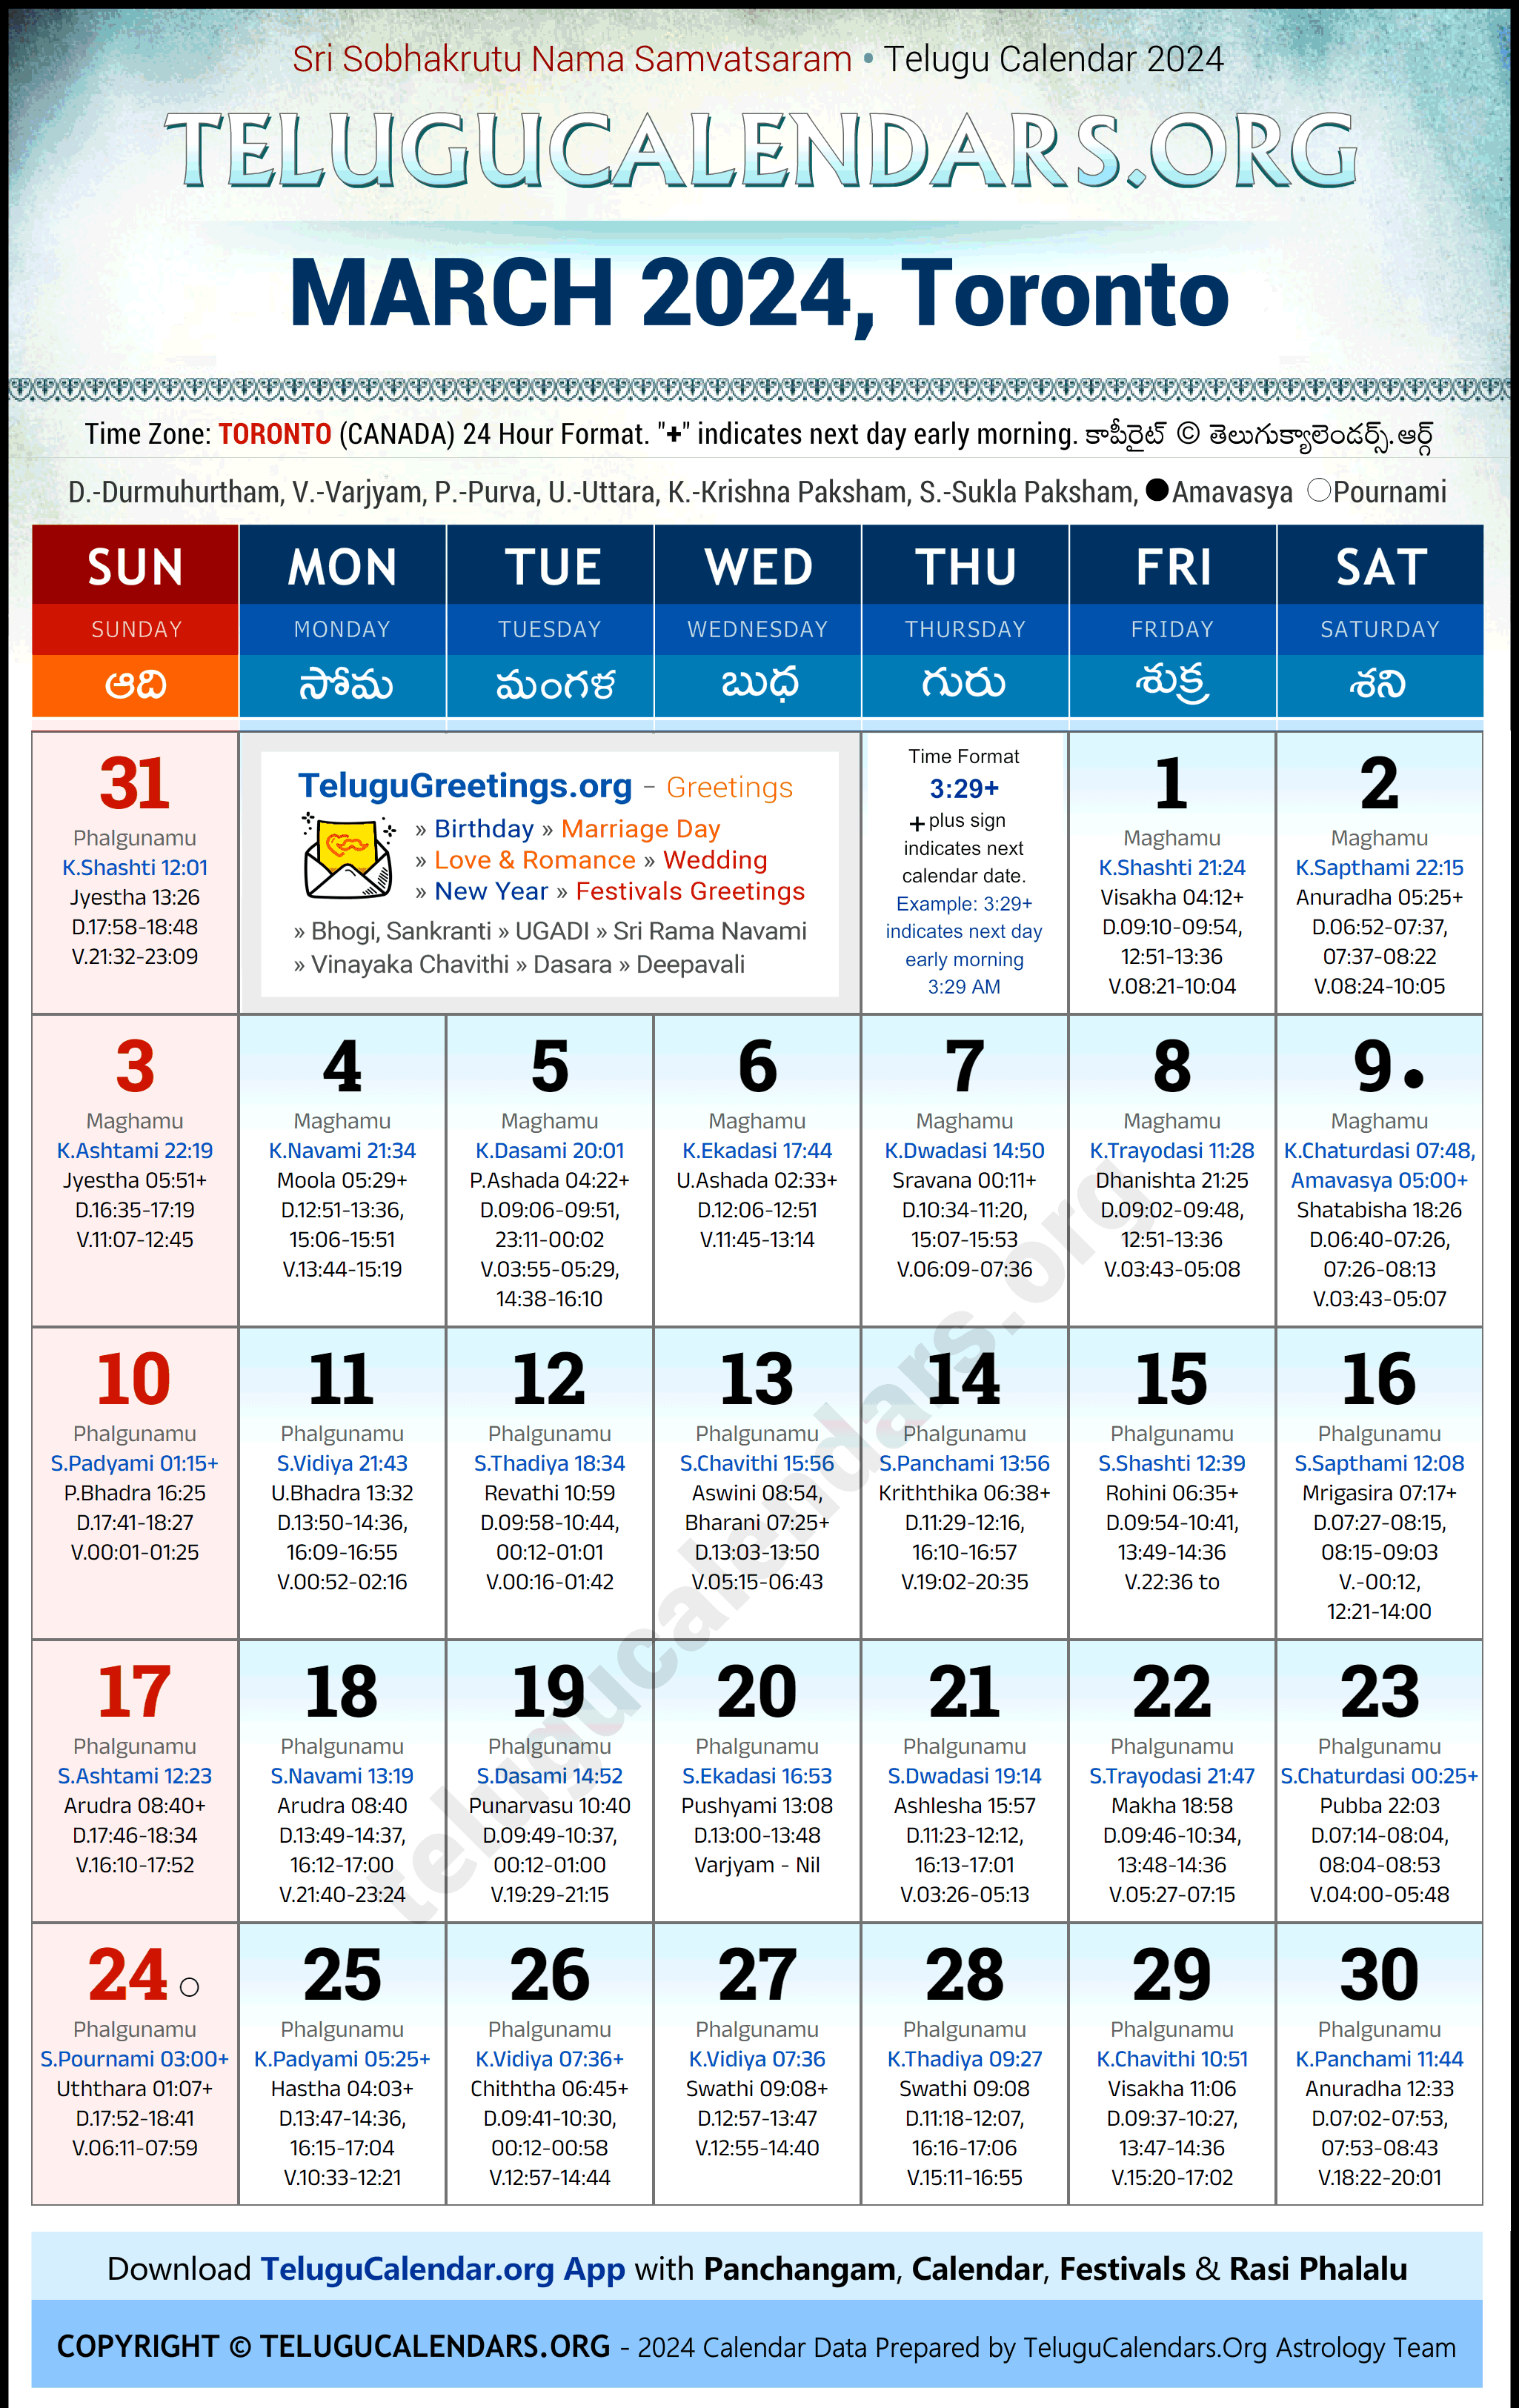 Telugu Calendar 2024 March Festivals for Toronto